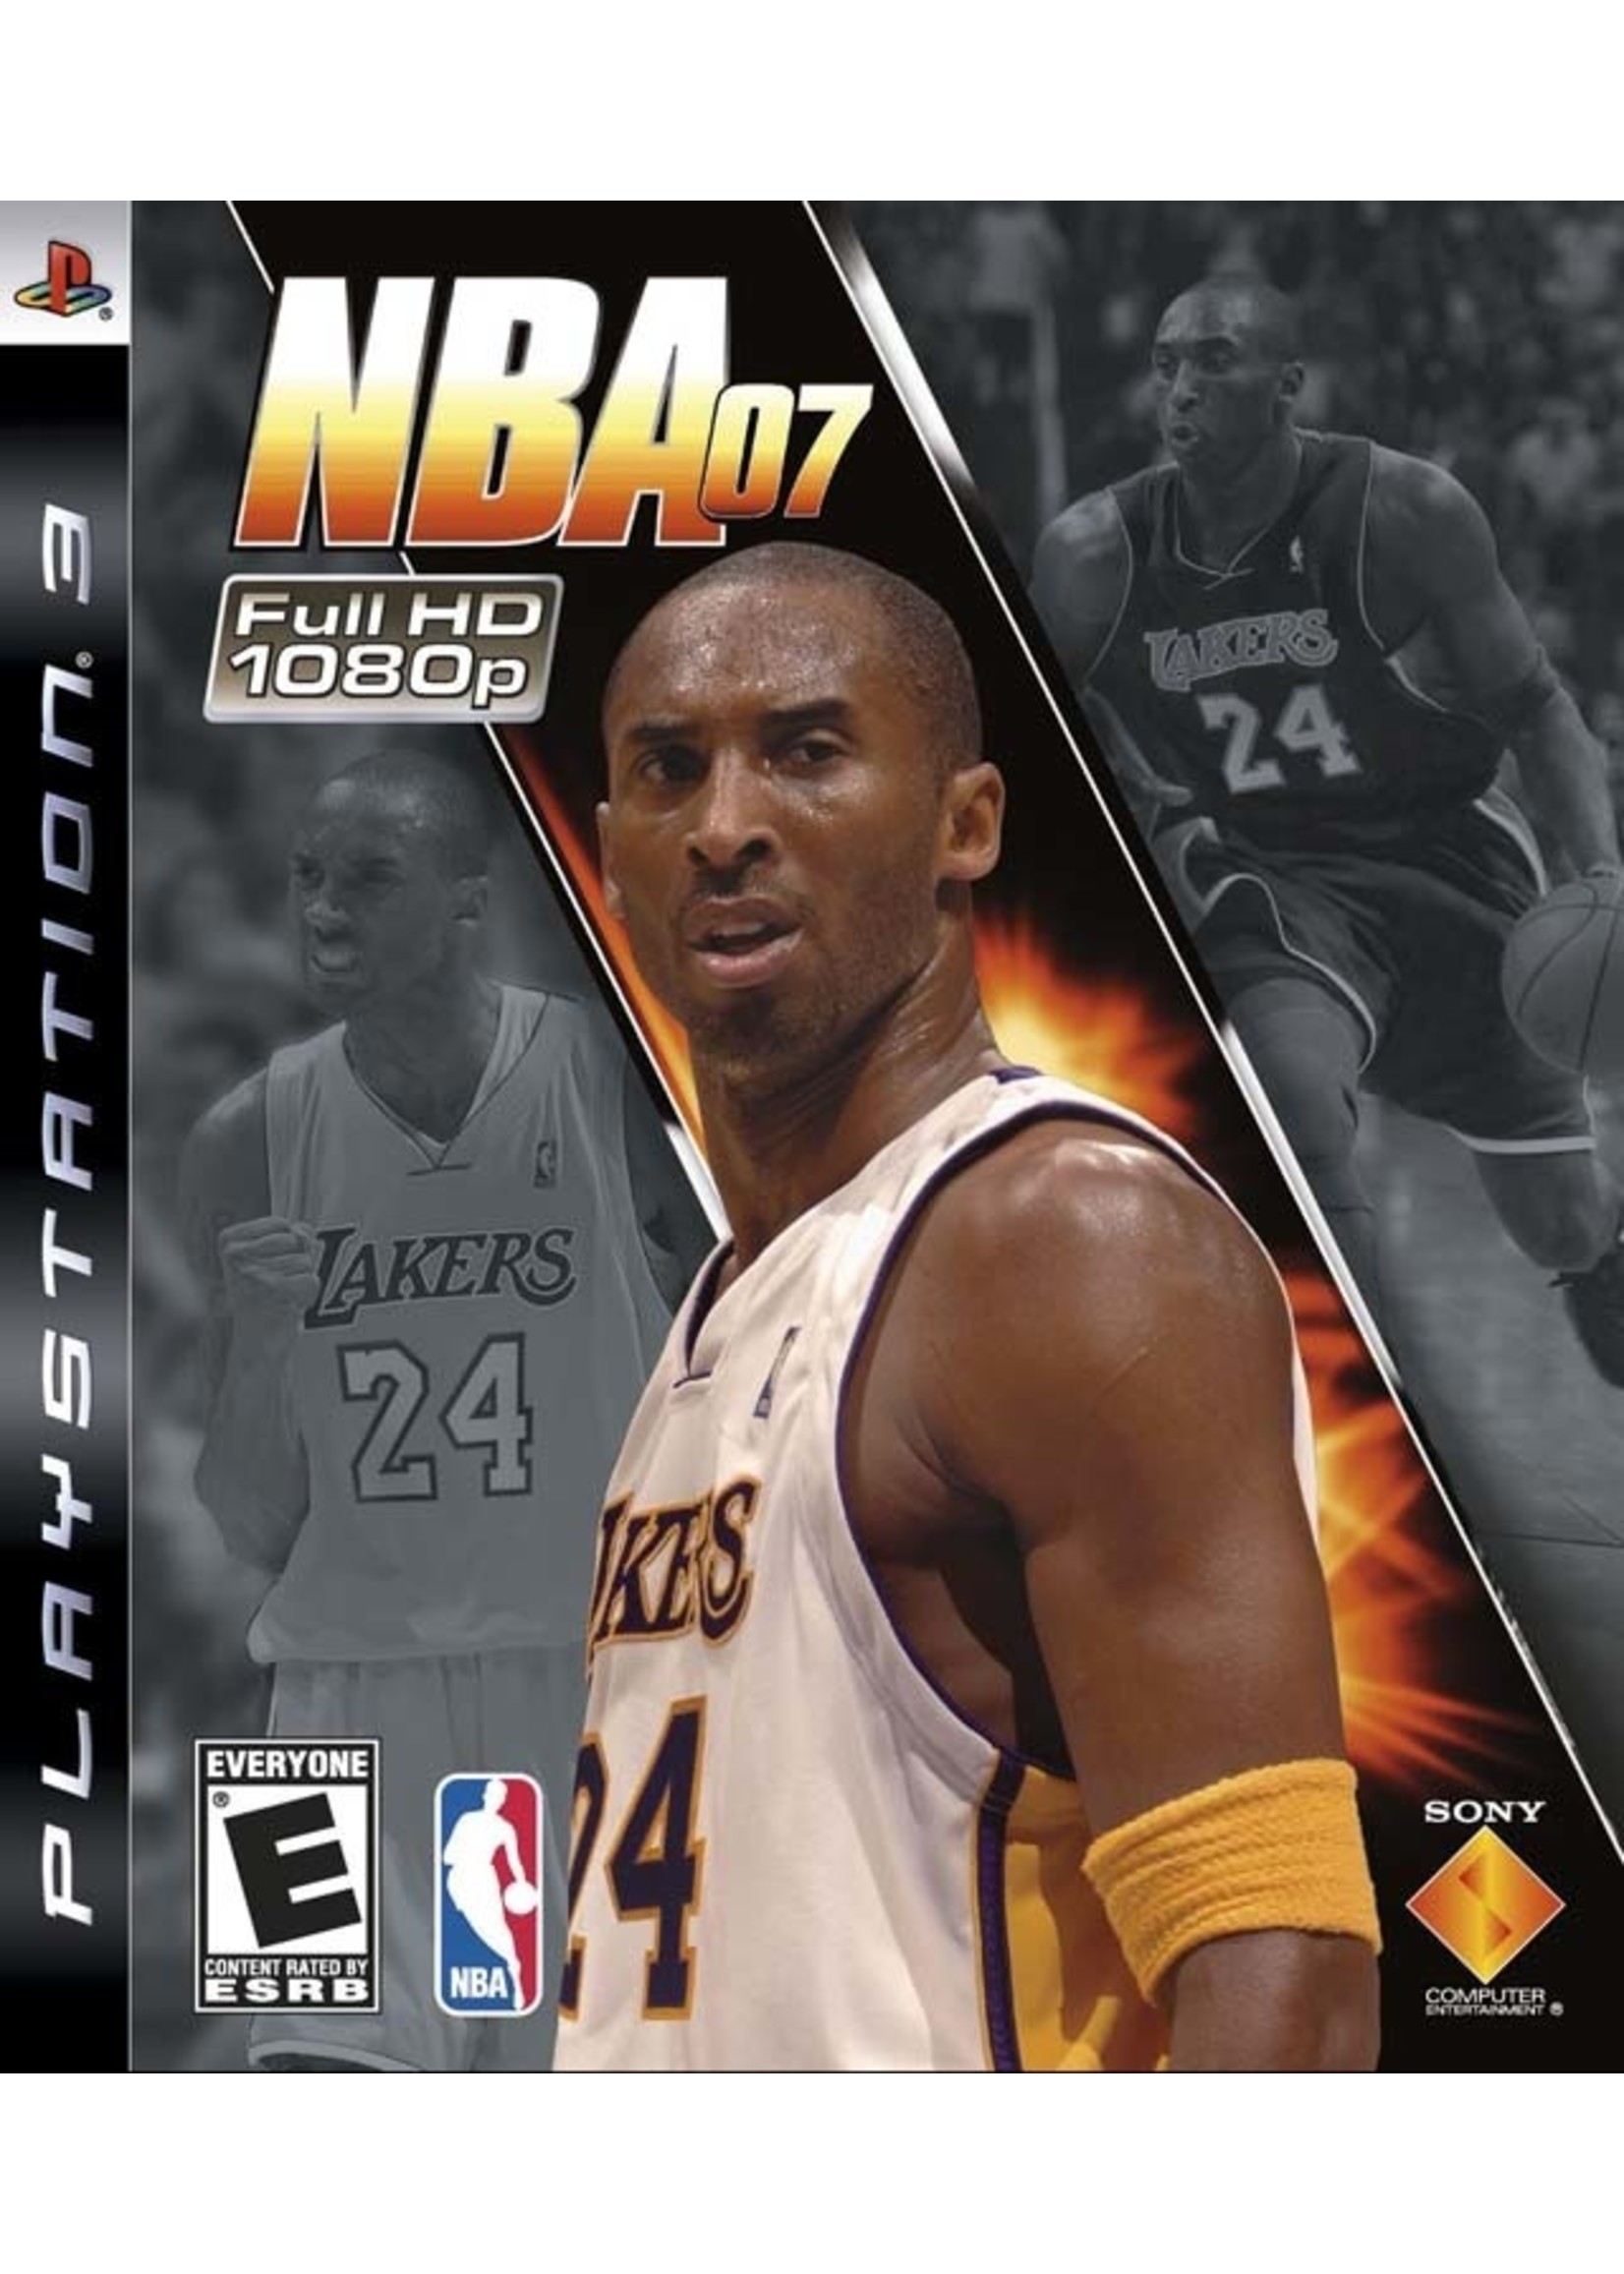 Sony Playstation 3 (PS3) NBA 07